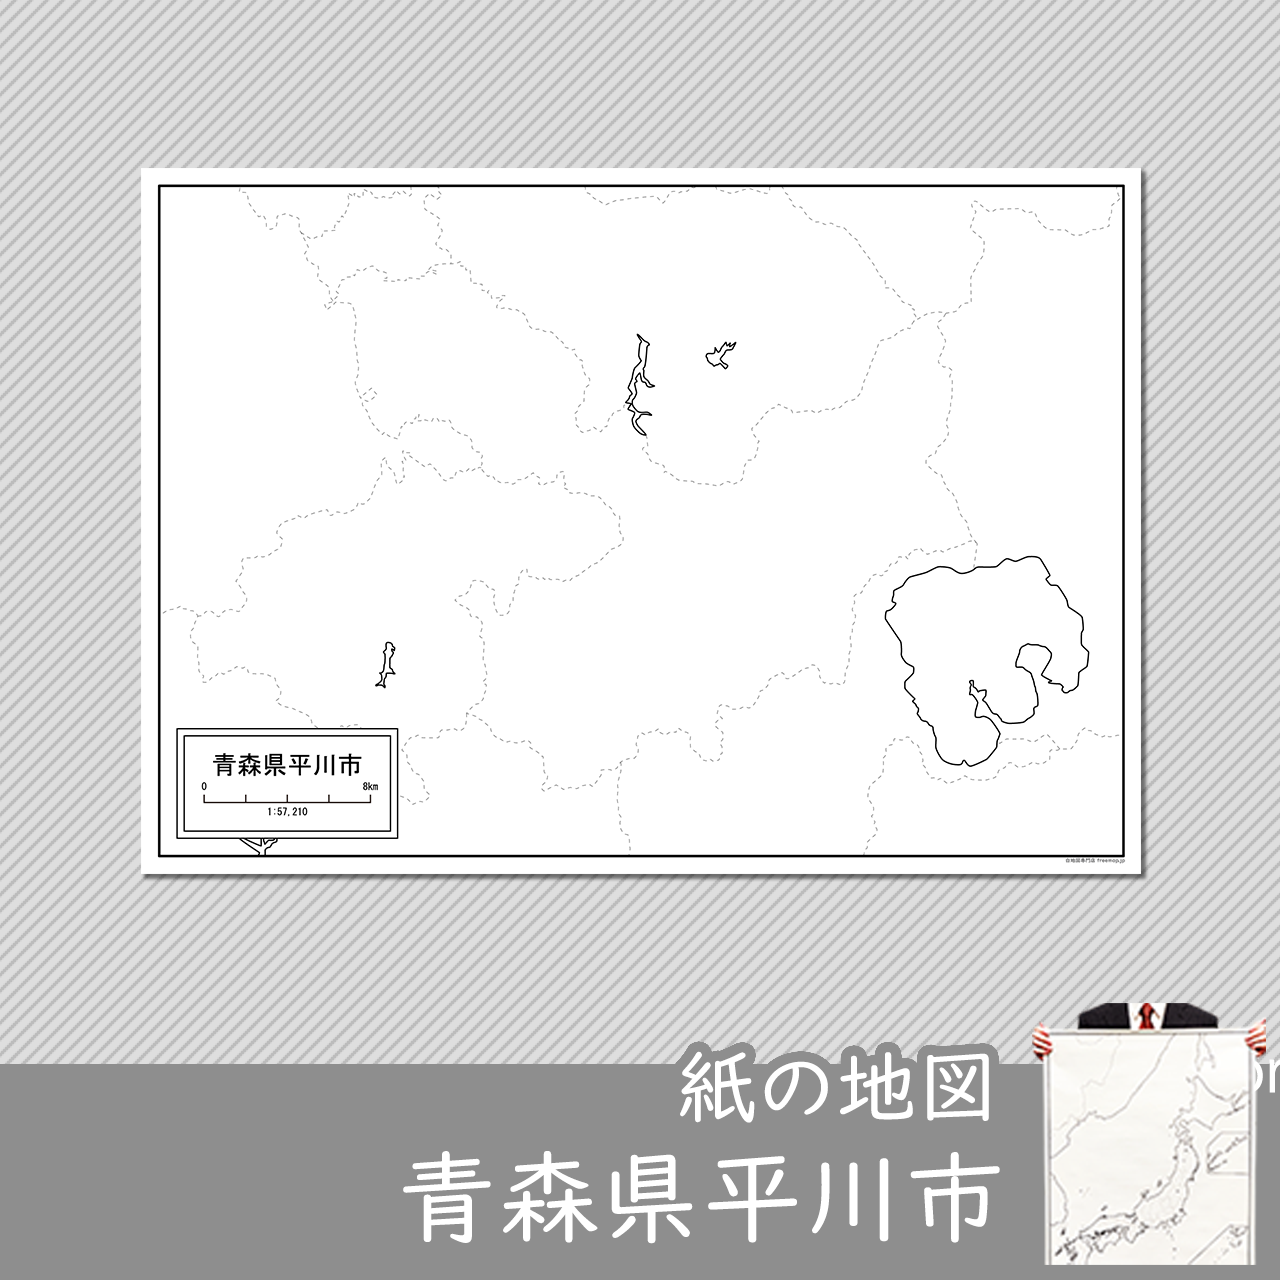 平川市の紙の白地図のサムネイル